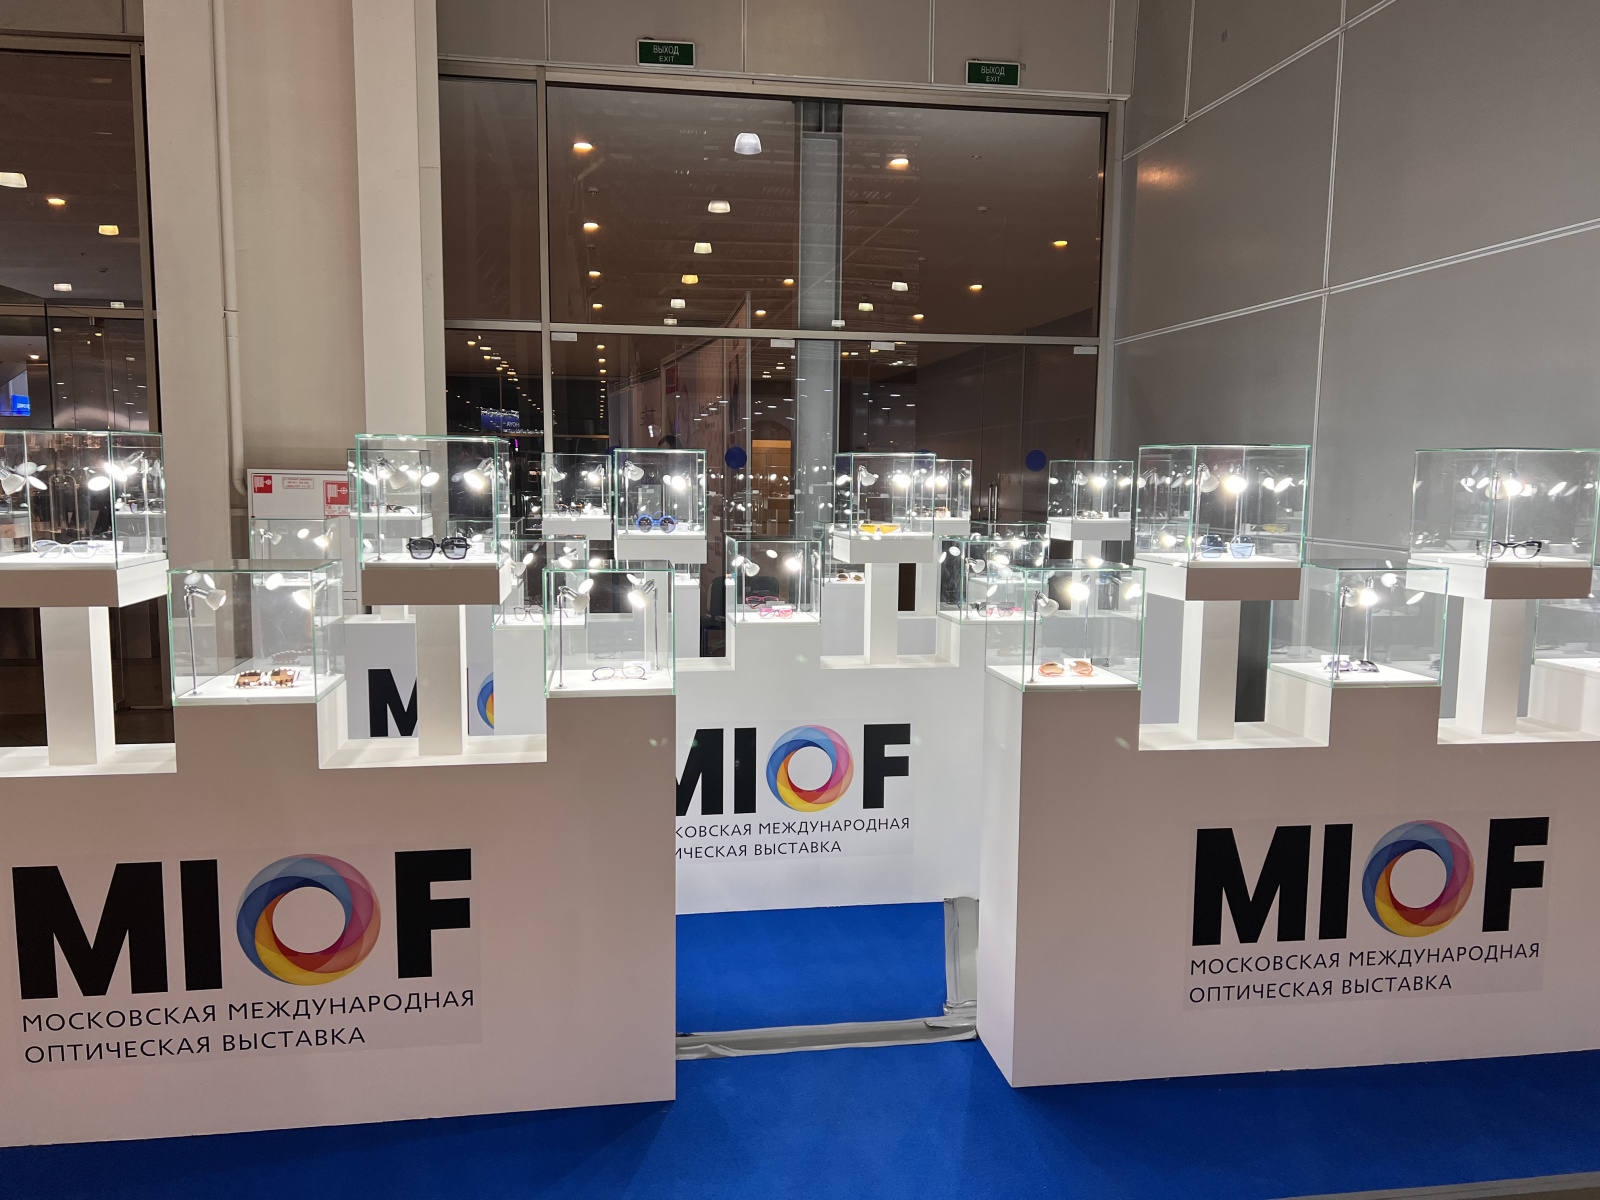 Представители ITigris выступили в рамках деловой программы выставки MIOF